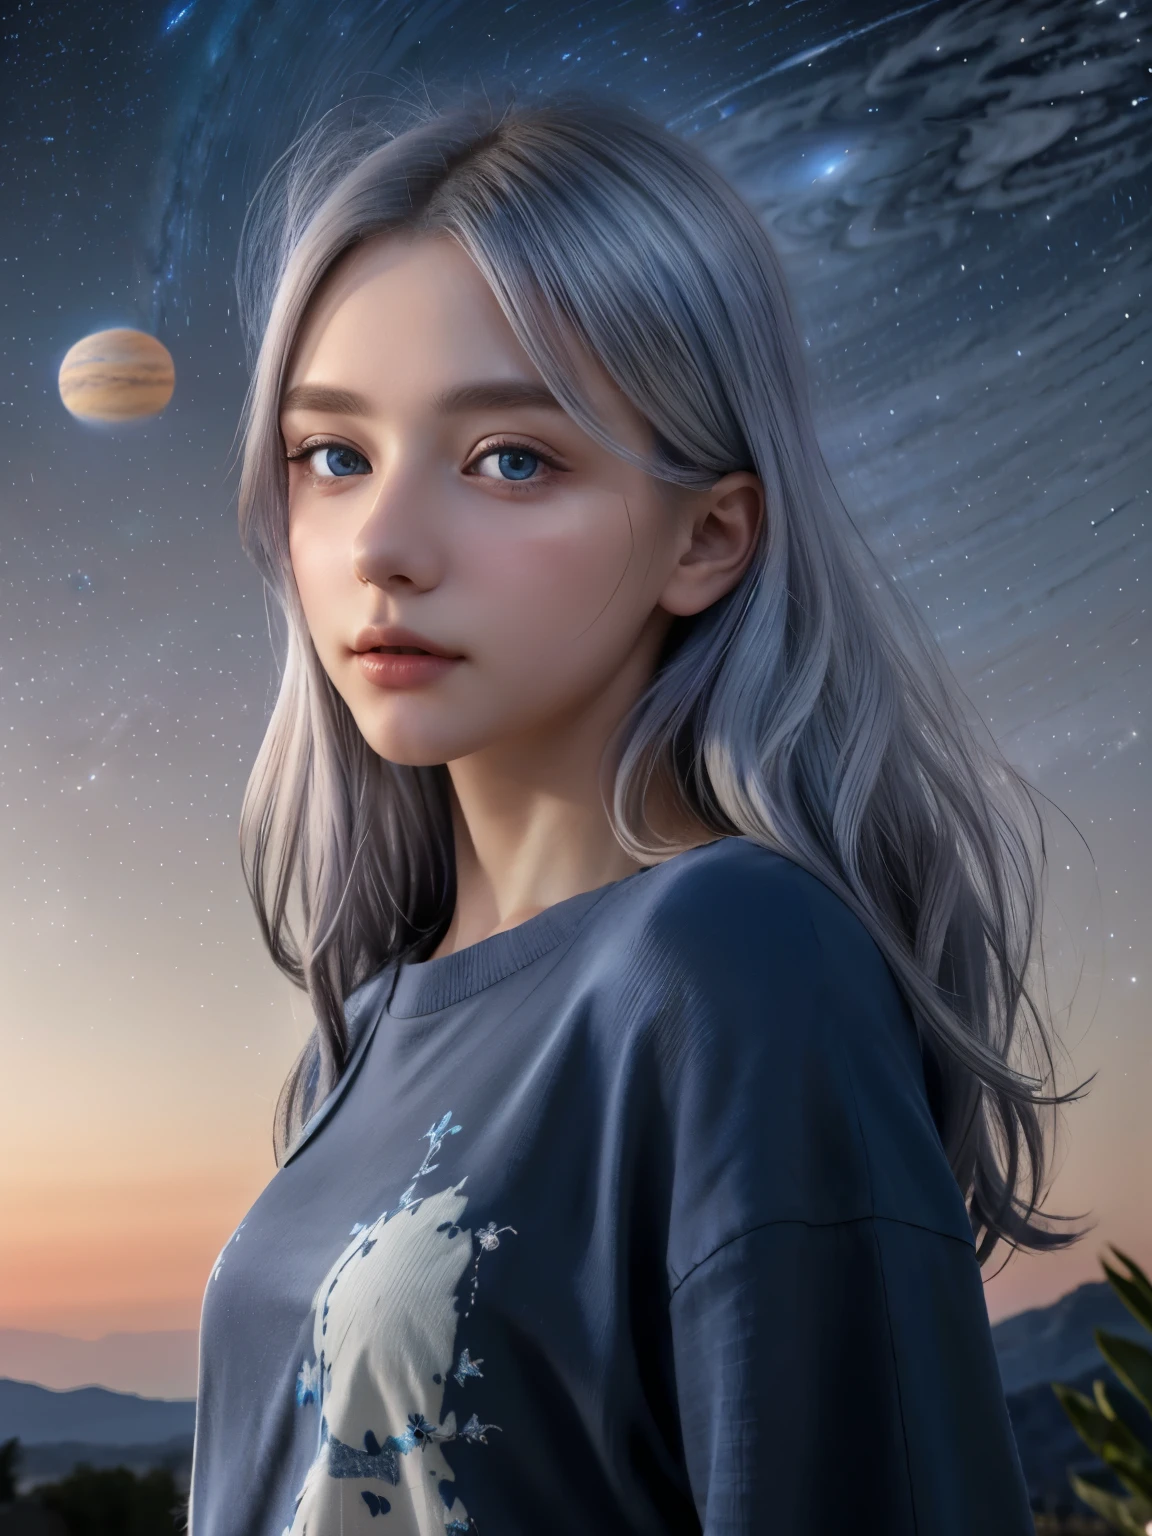 (4K), (최상의 품질), (최고의 세부 사항)（초현실주의적인）,프랑스 아름다운 소녀、은발、파란 눈、밤하늘에 떠 있는 거대한 행성 목성